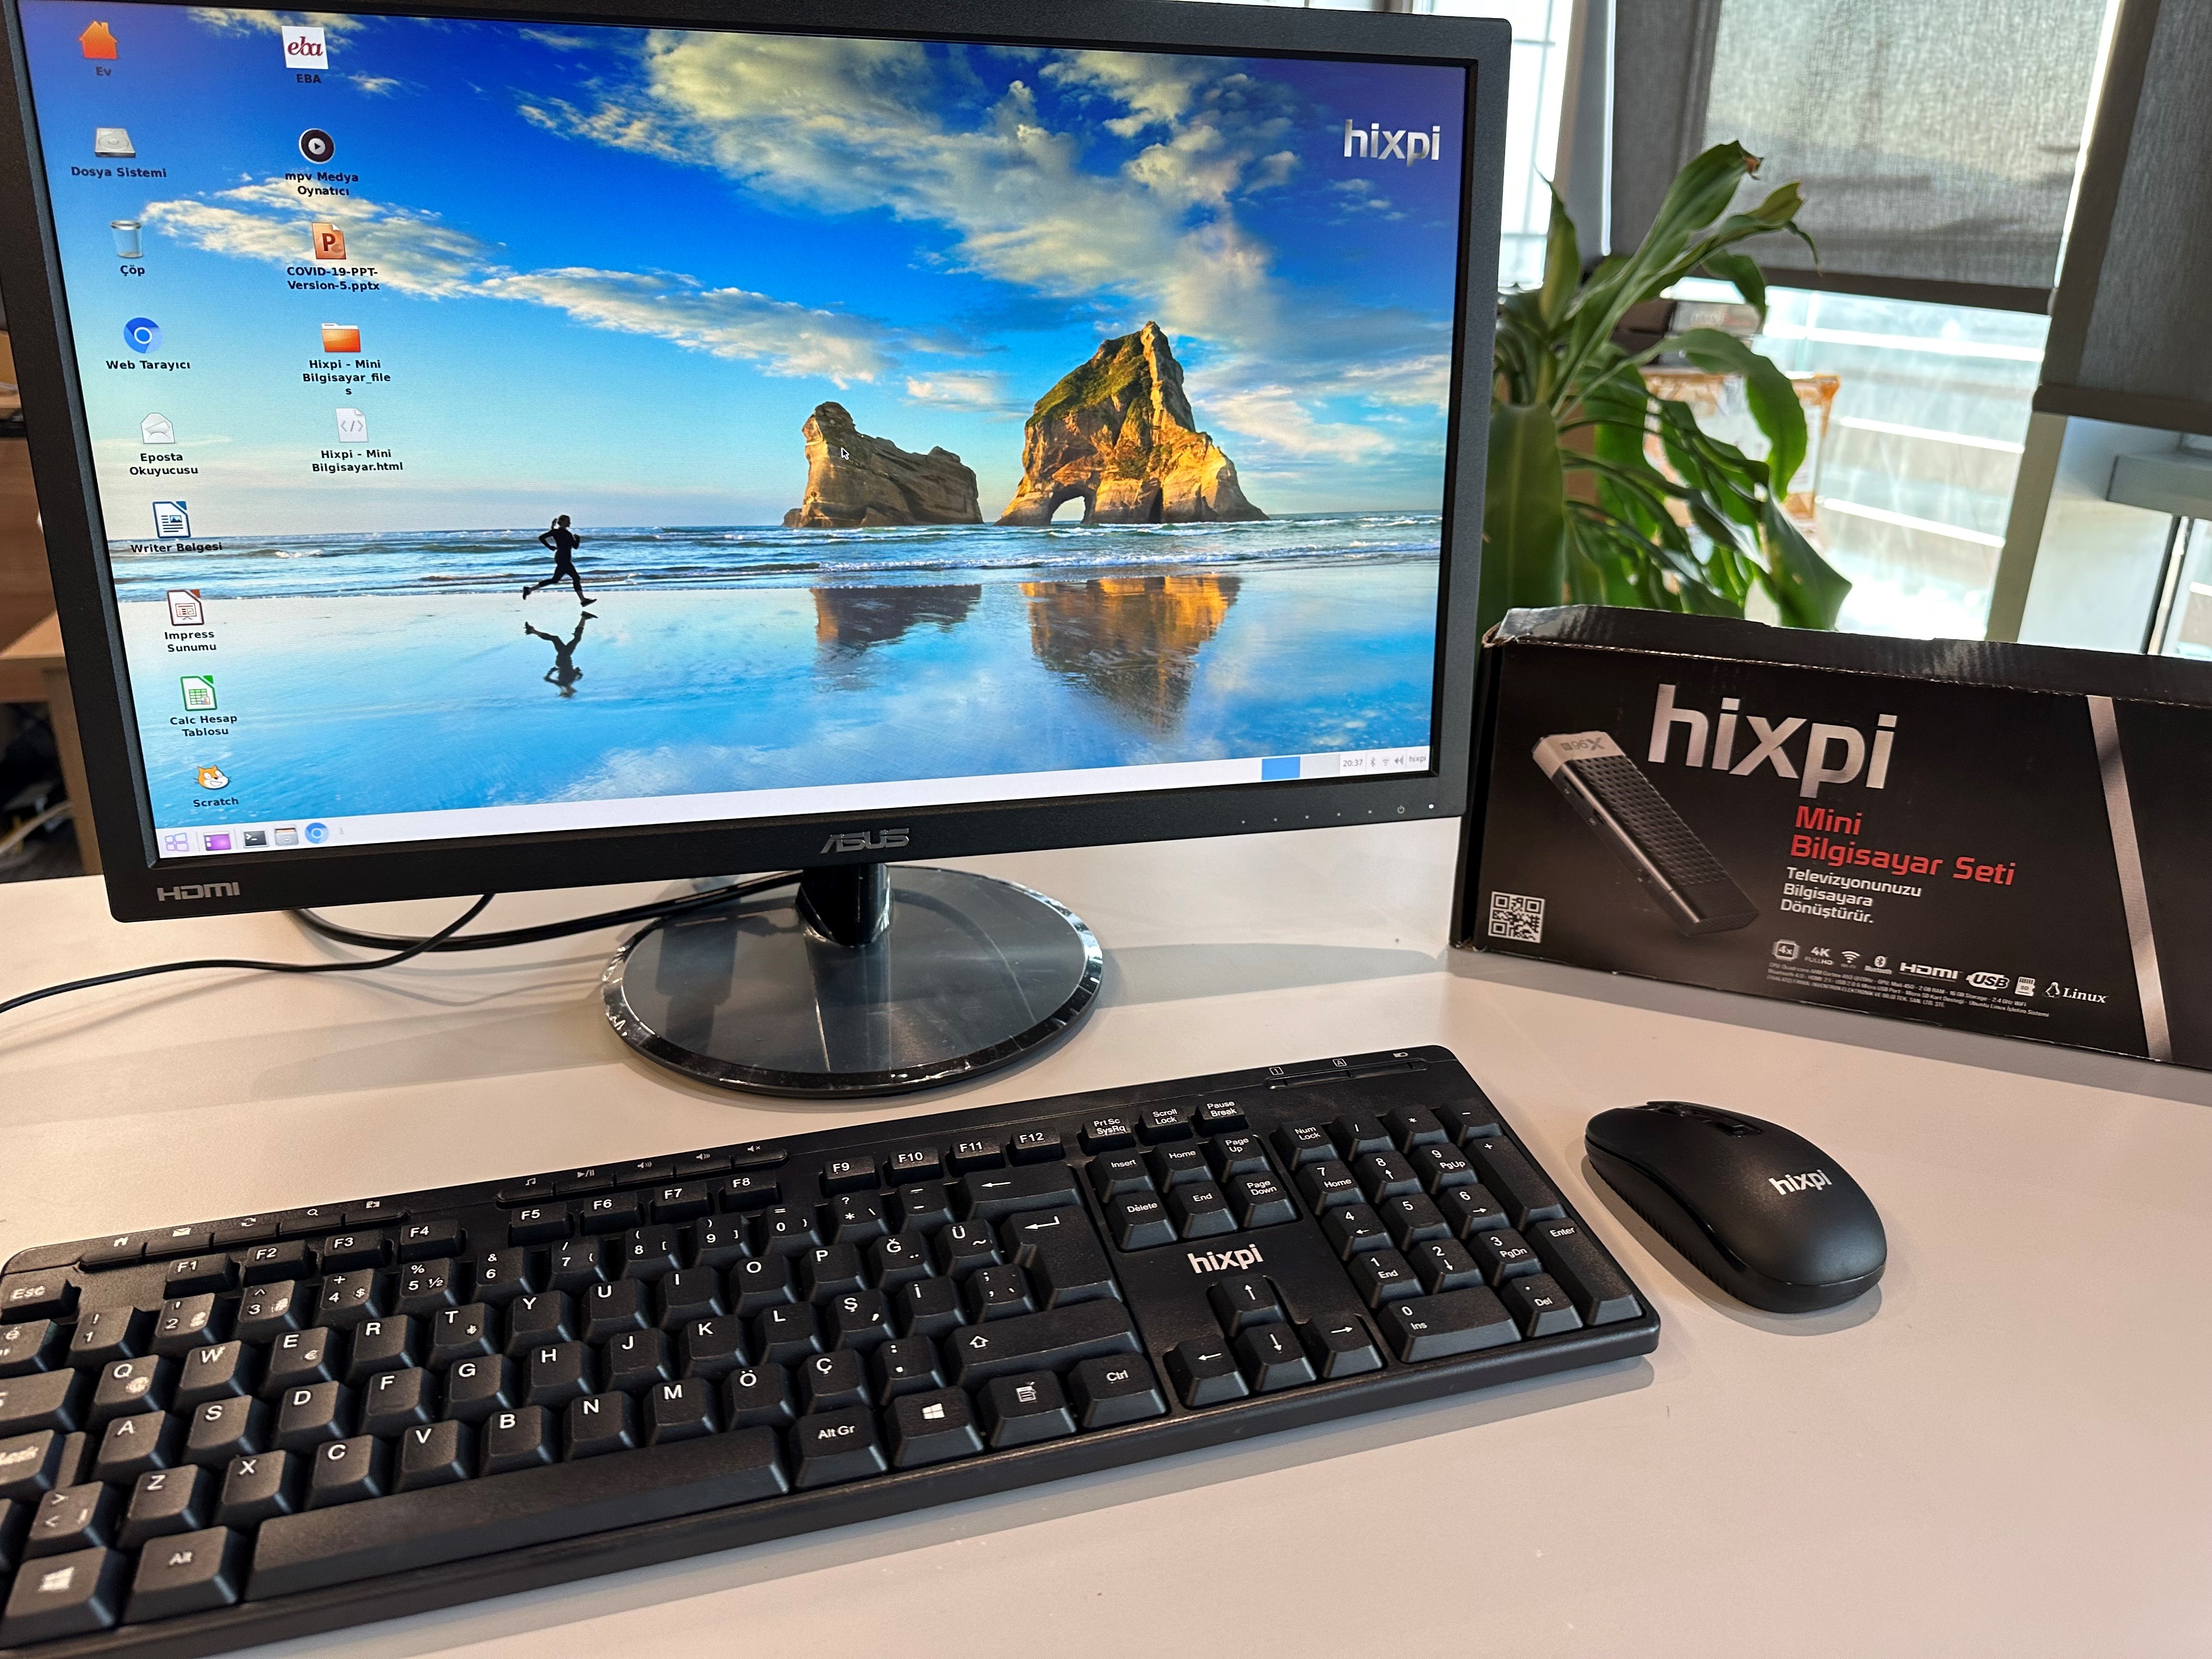 Hixpi Mini Bilgisayar (Komple Set)